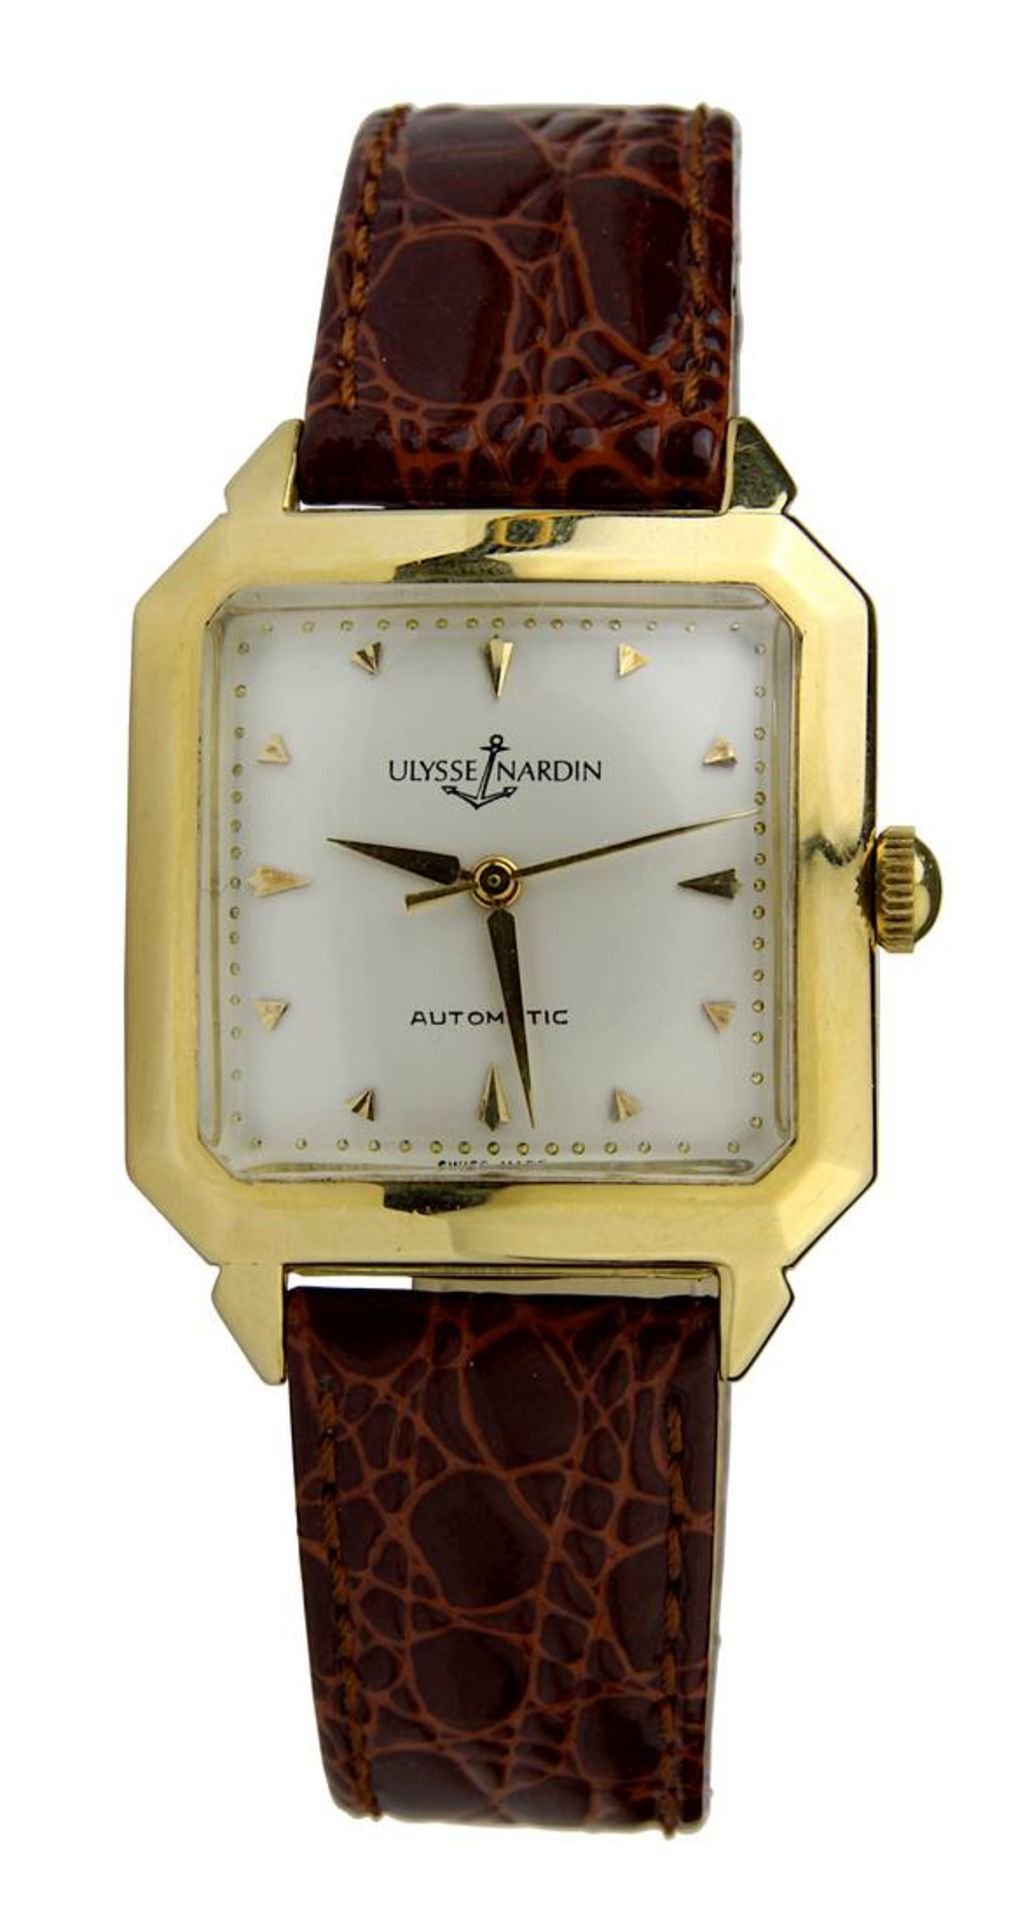 Ulysse Nardin Automatic Herren-Armbanduhr, Le Locle, Schweiz, quadratisches Gehäuse Gelbgold, 3,2